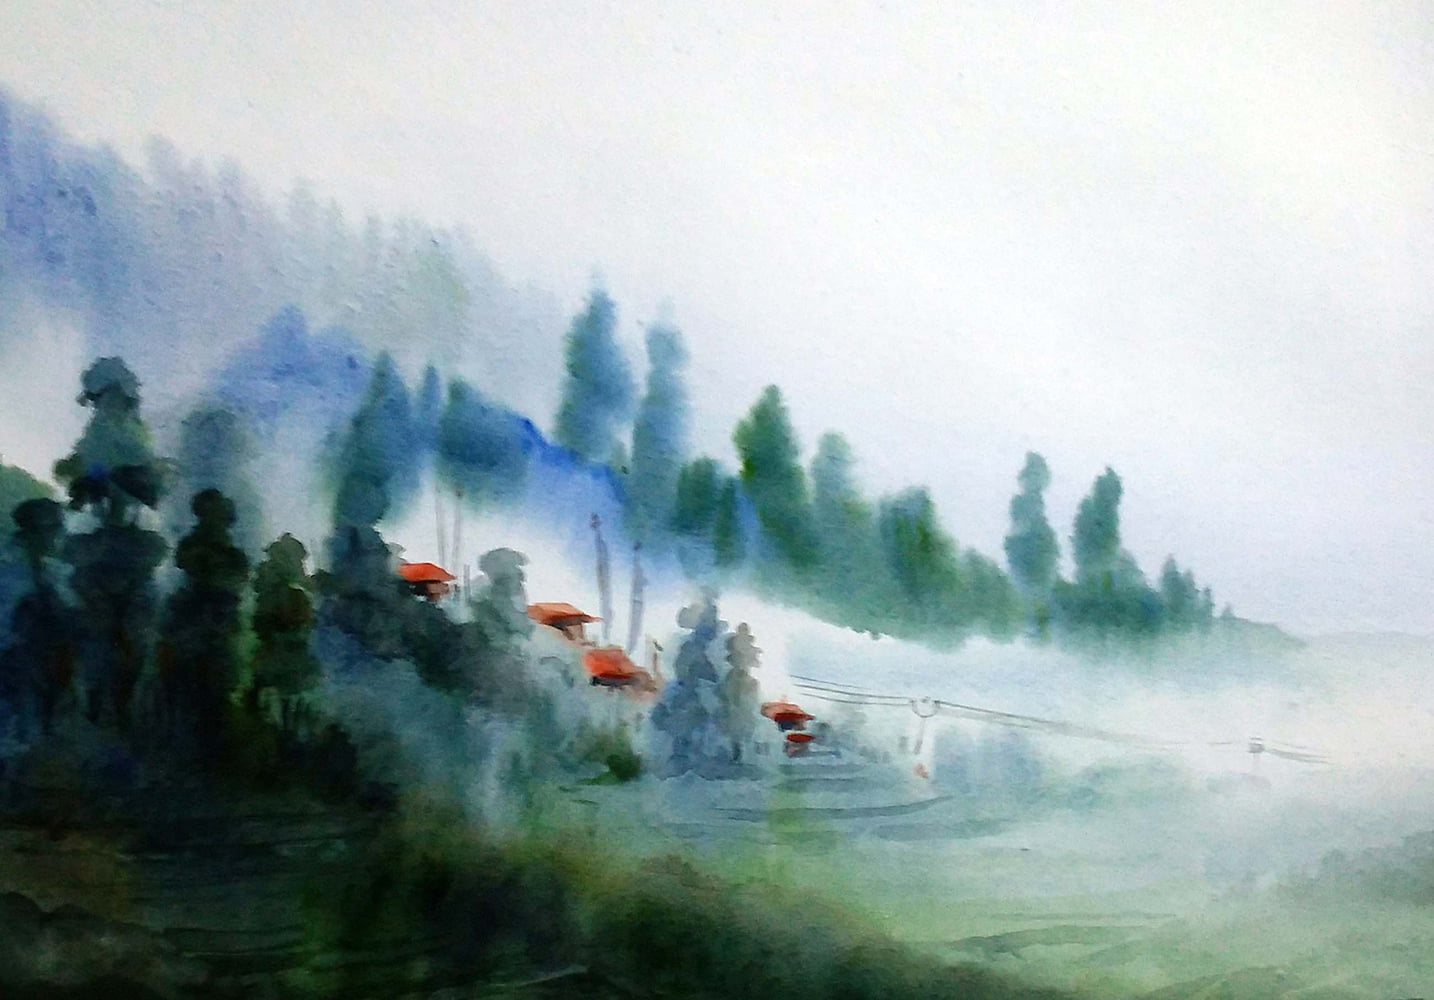 The Himalayas – The Mist and The Fog, Samiran Sarkar (India) - Exquisite Art